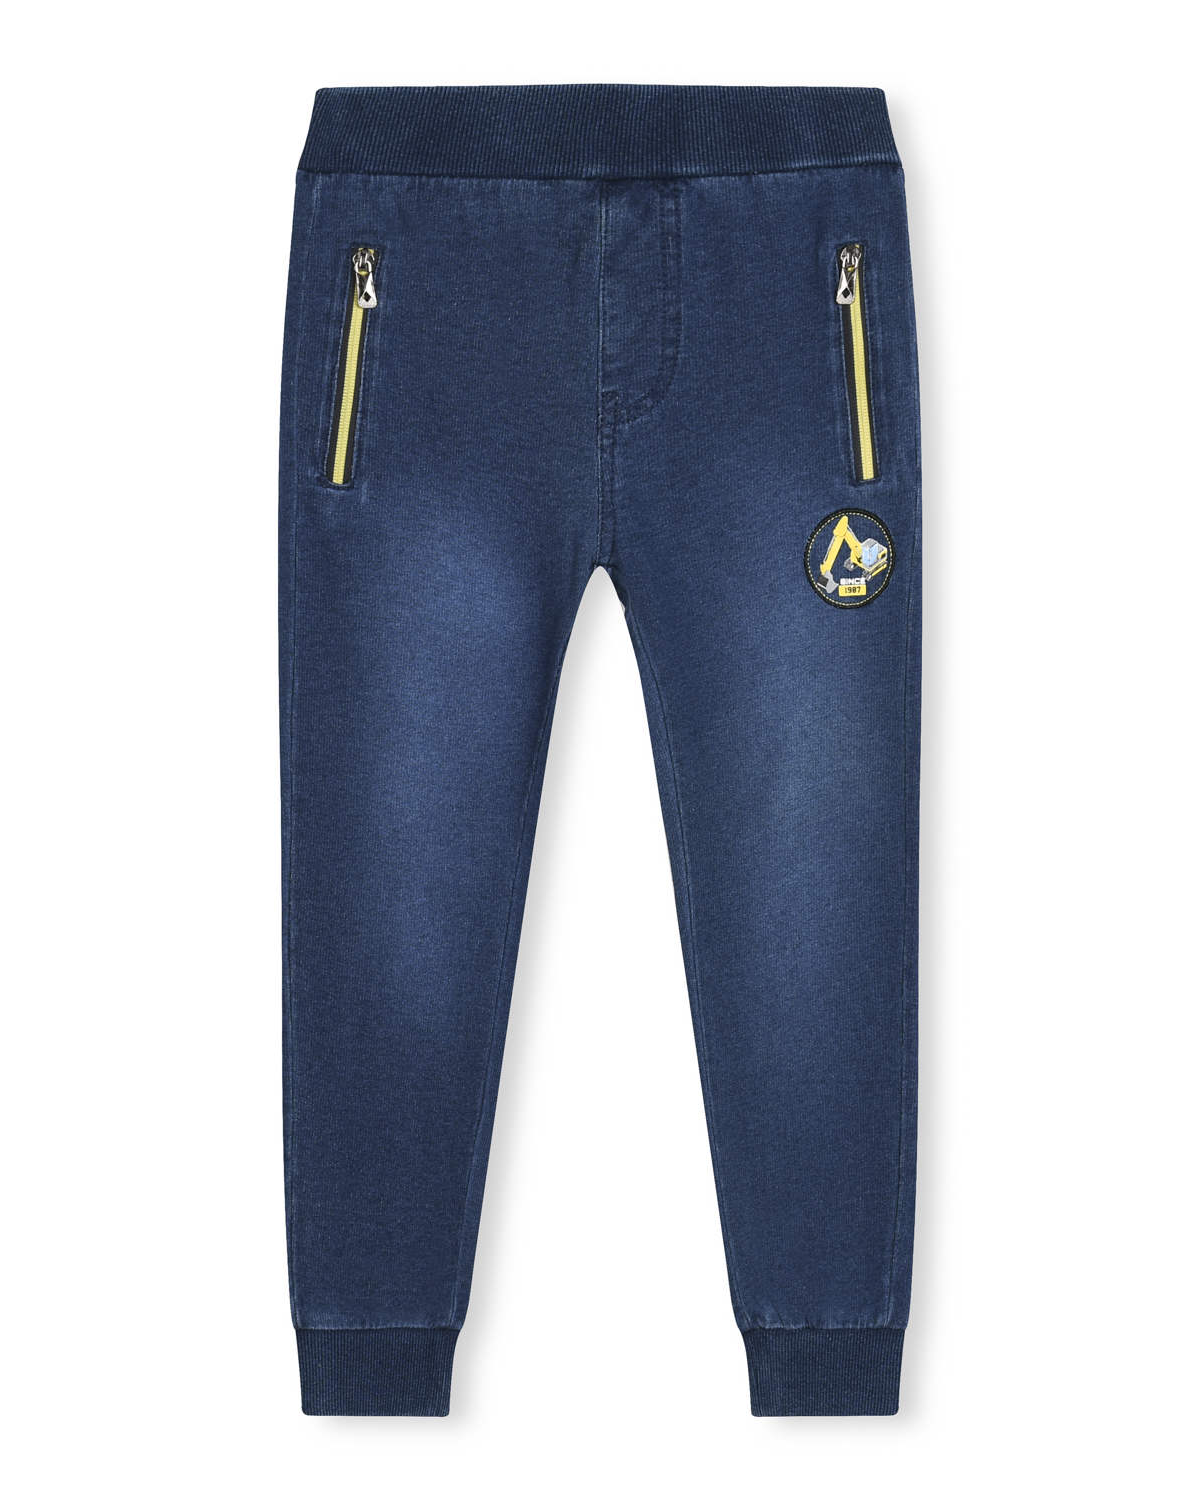 Chlapecké riflové kalhoty / tepláky - KUGO TM8259K, modrá / tyrkysové zipy Barva: Modrá, Velikost: 98